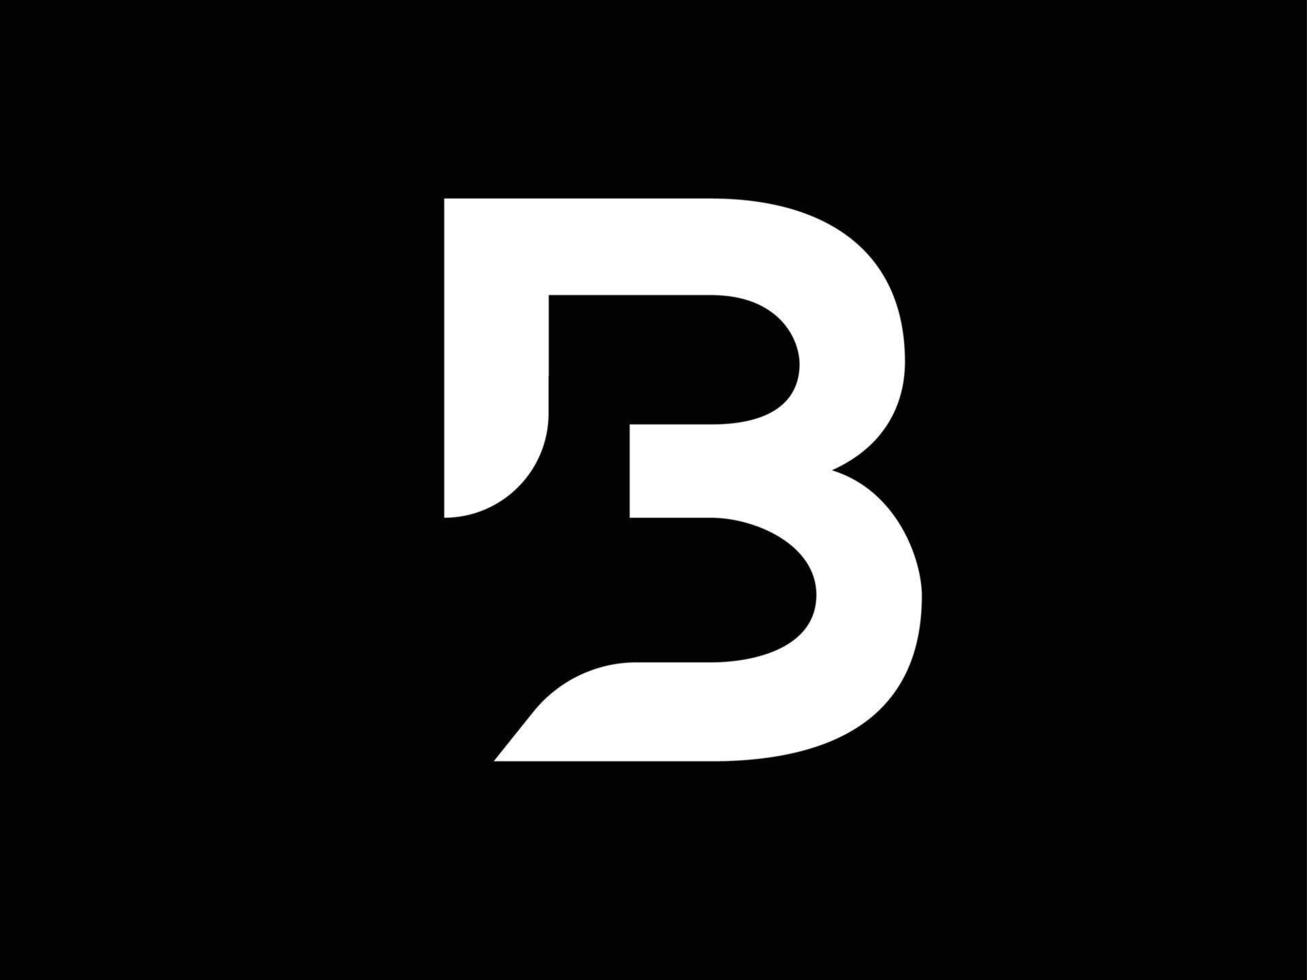 svart och vitt b. modern b logotyp vektor. stor b-logotyp vektor